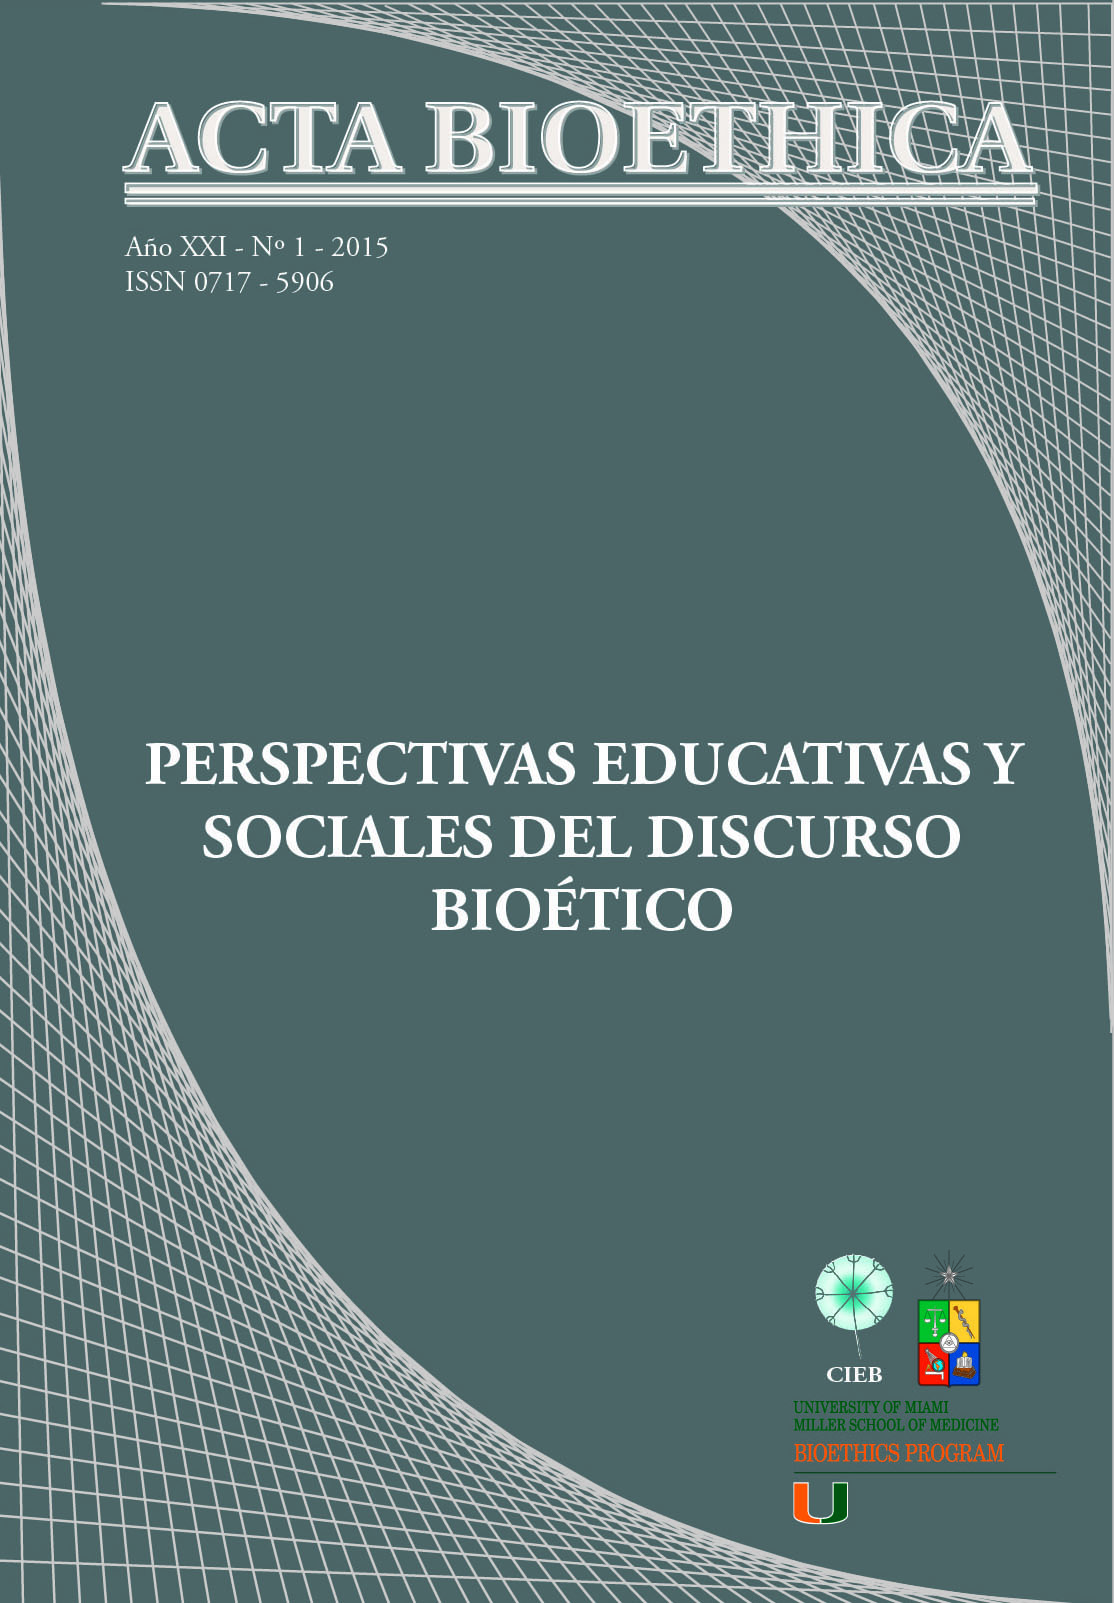 											View Vol. 21 No. 1 (2015): Perspectivas Educativas y Sociales del Discurso Bioético
										